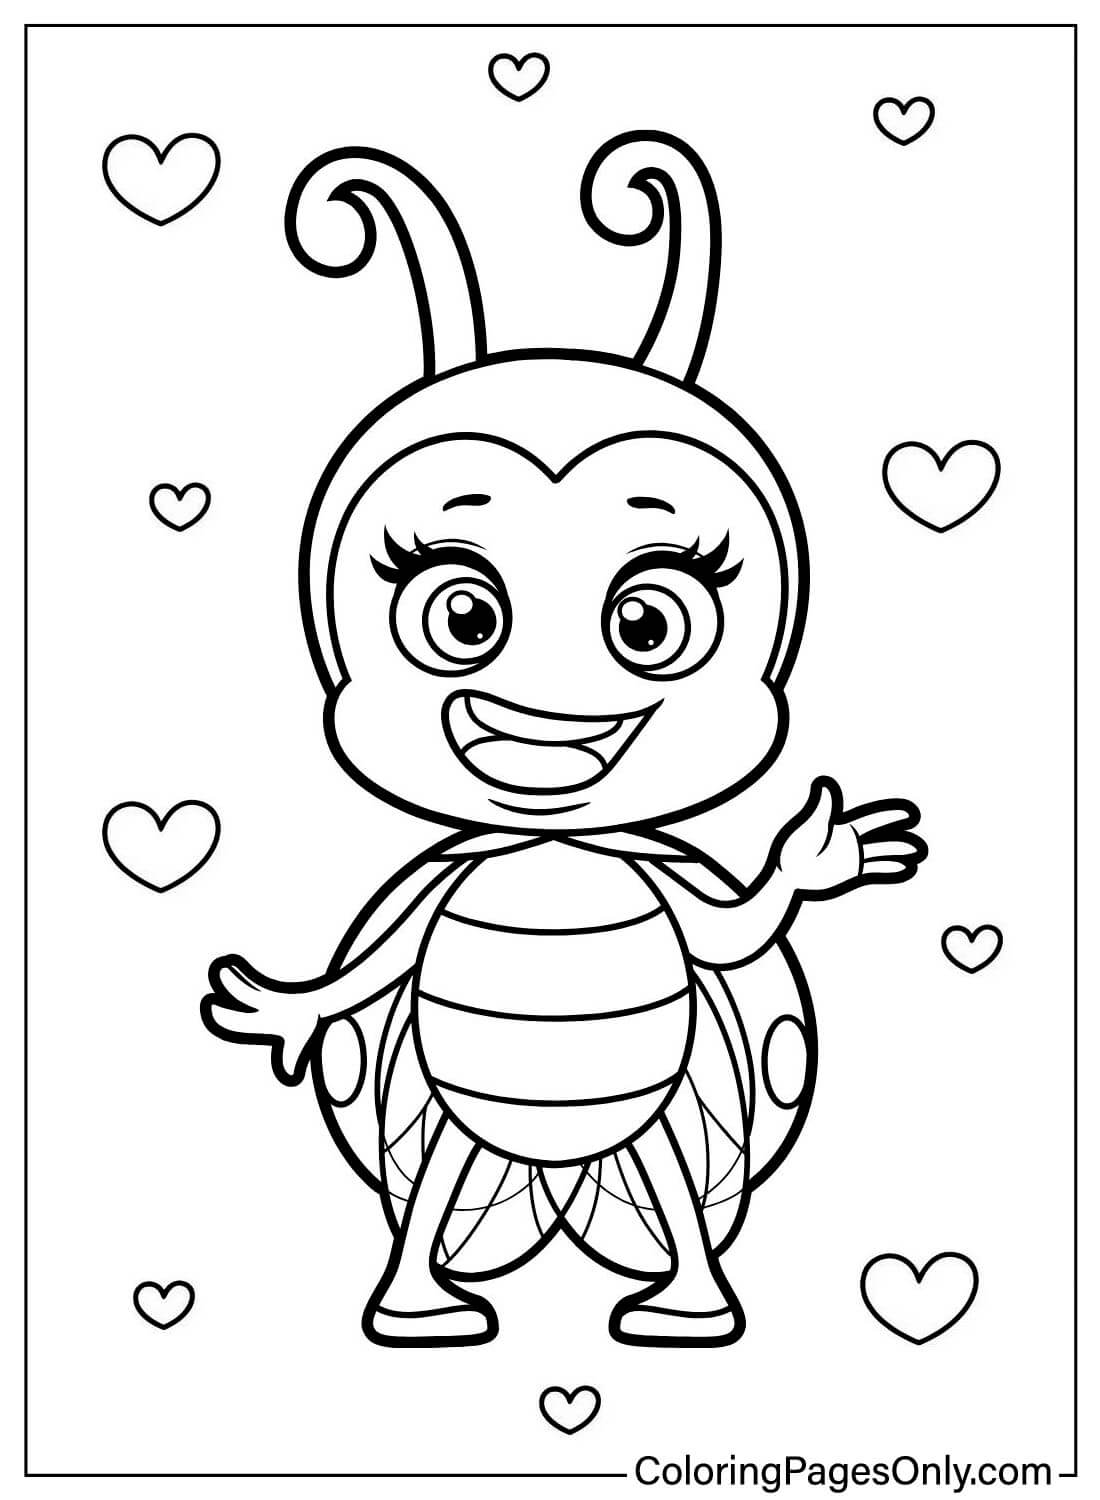 Página para colorear de Happy Ladybug de Ladybug